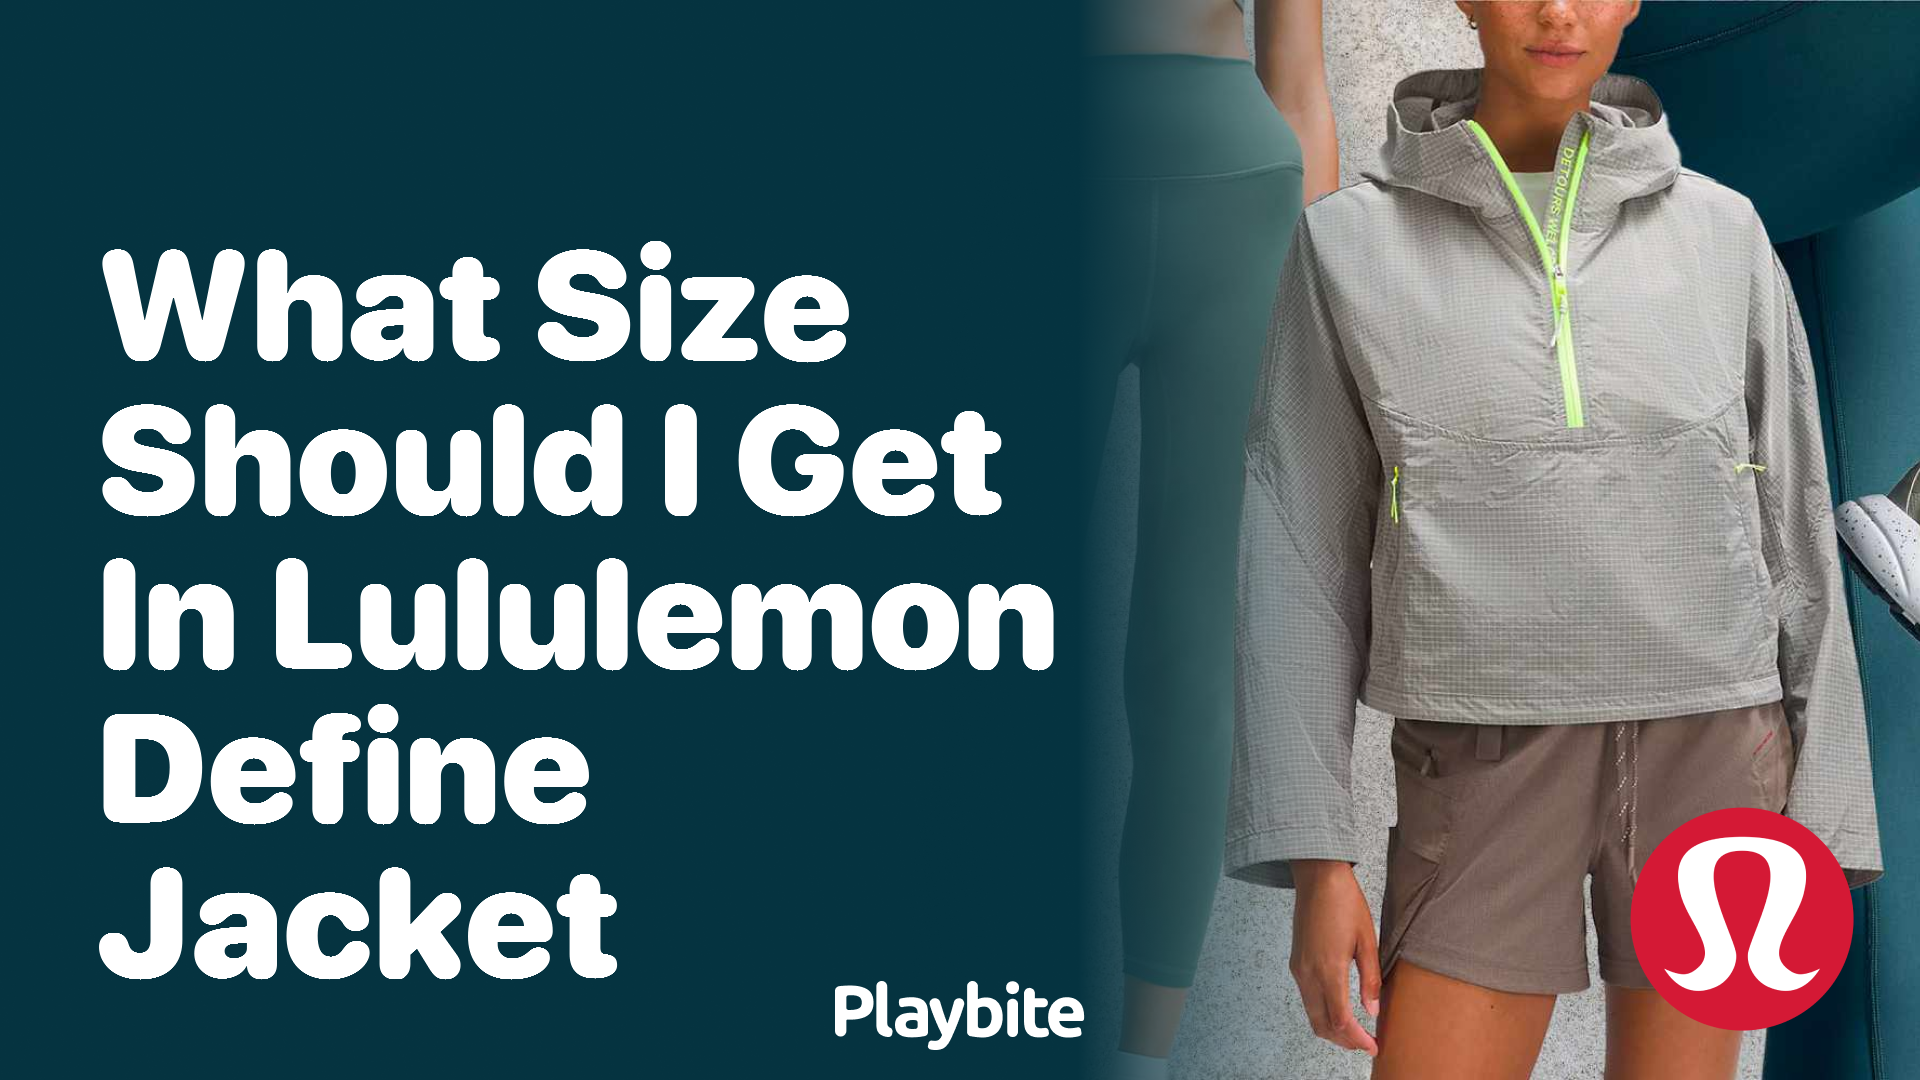 What Size Should I Get in Lululemon Define Jacket? - Playbite